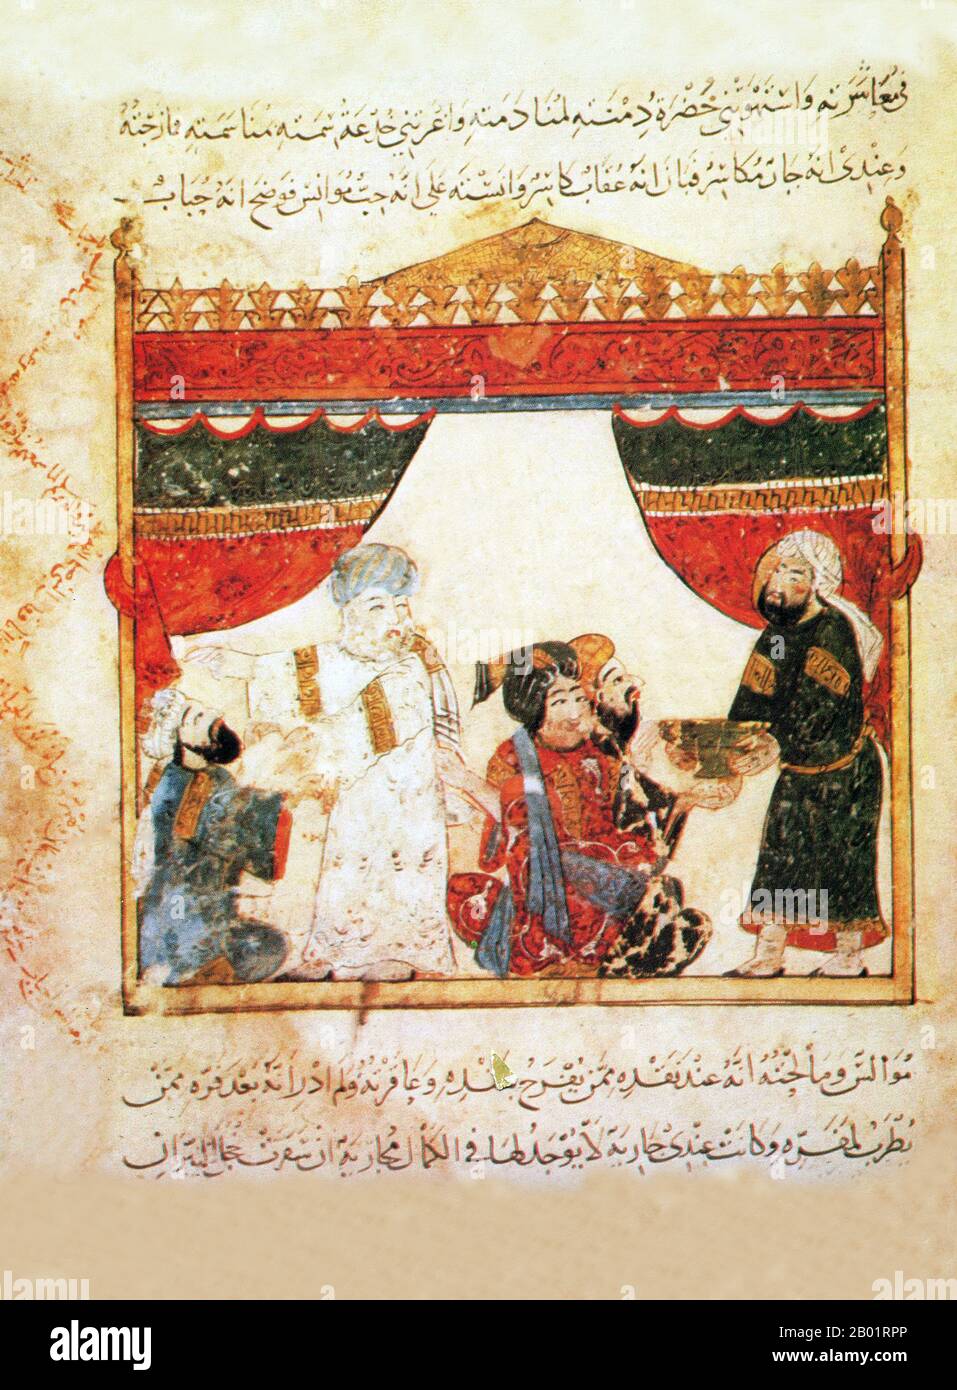 Iraq: Miniatura di Yahya ibn Mahmud al-Wasiti, 1237 d.C. Yahyâ ibn Mahmûd al-Wâsitî è stato un artista arabo islamico del XIII secolo. Al-Wasiti è nato a Wasit, nel sud dell'Iraq. Era noto per le sue illustrazioni del Maqam di al-Hariri. I Maqāma (letteralmente "assemblee") sono un genere letterario arabo (originariamente) di prosa rimata con intervalli di poesia in cui la stravaganza retorica è evidente. Si dice che l'autore del X secolo Badī' al-Zaman al-Hamadhāni abbia inventato la forma, che fu estesa da al-Hariri di Bassora nel secolo successivo. Foto Stock